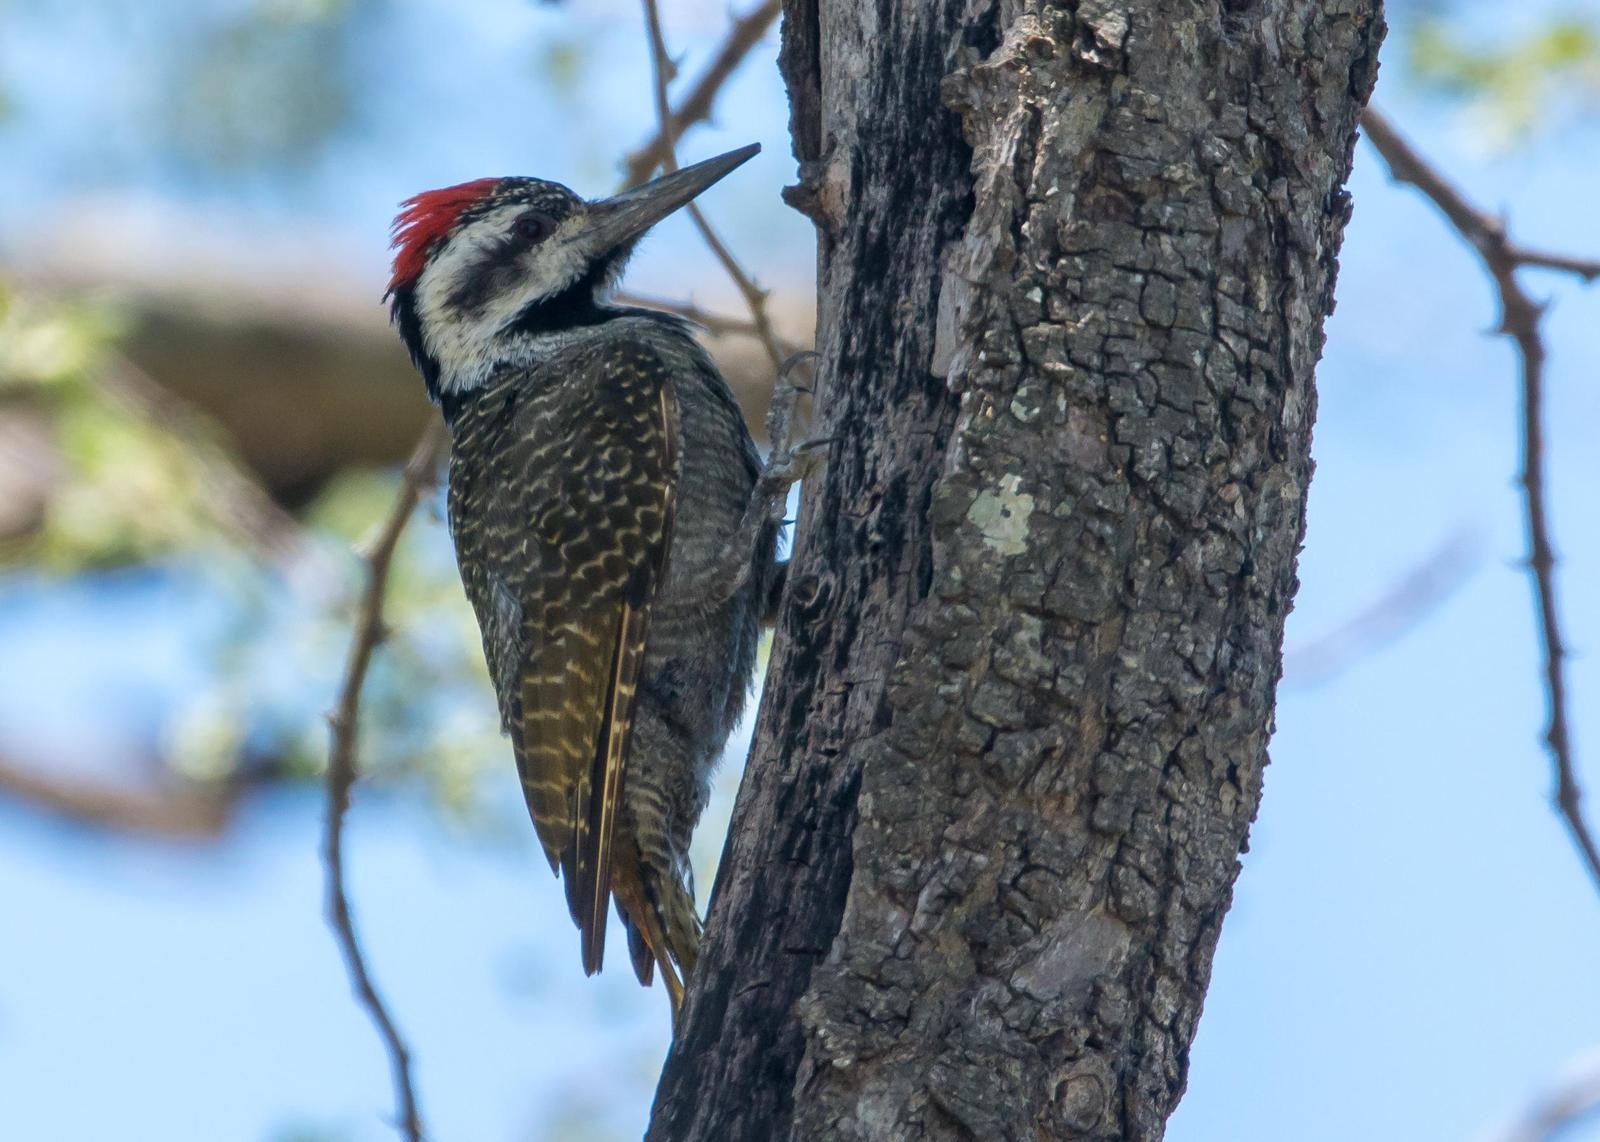 Bearded Woodpecker Photo by Gerald Hoekstra